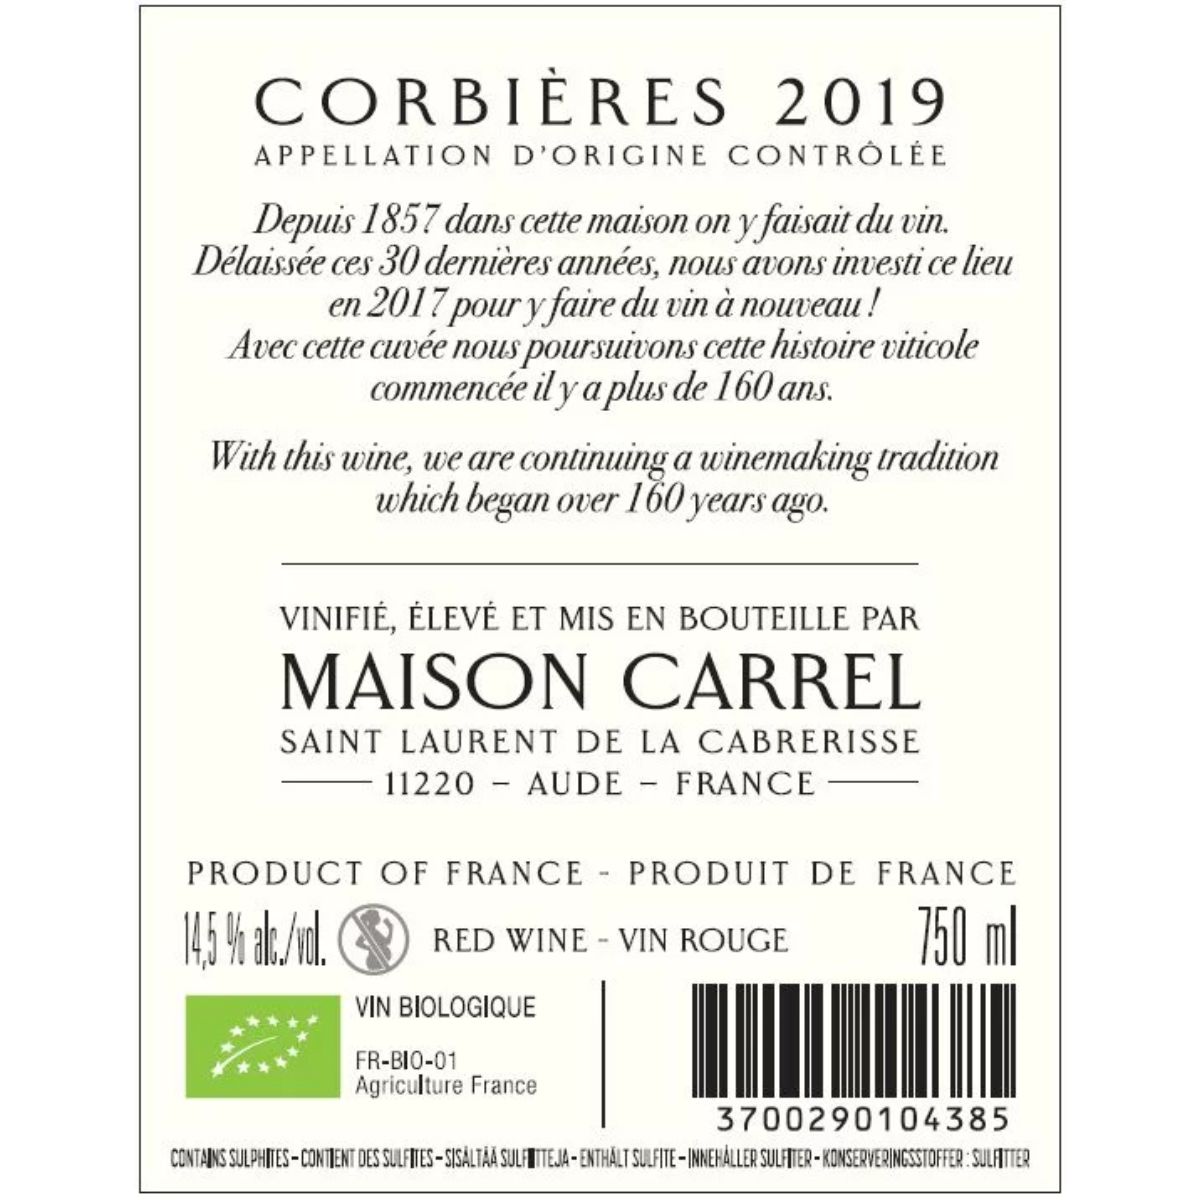 CORBIERES 2019